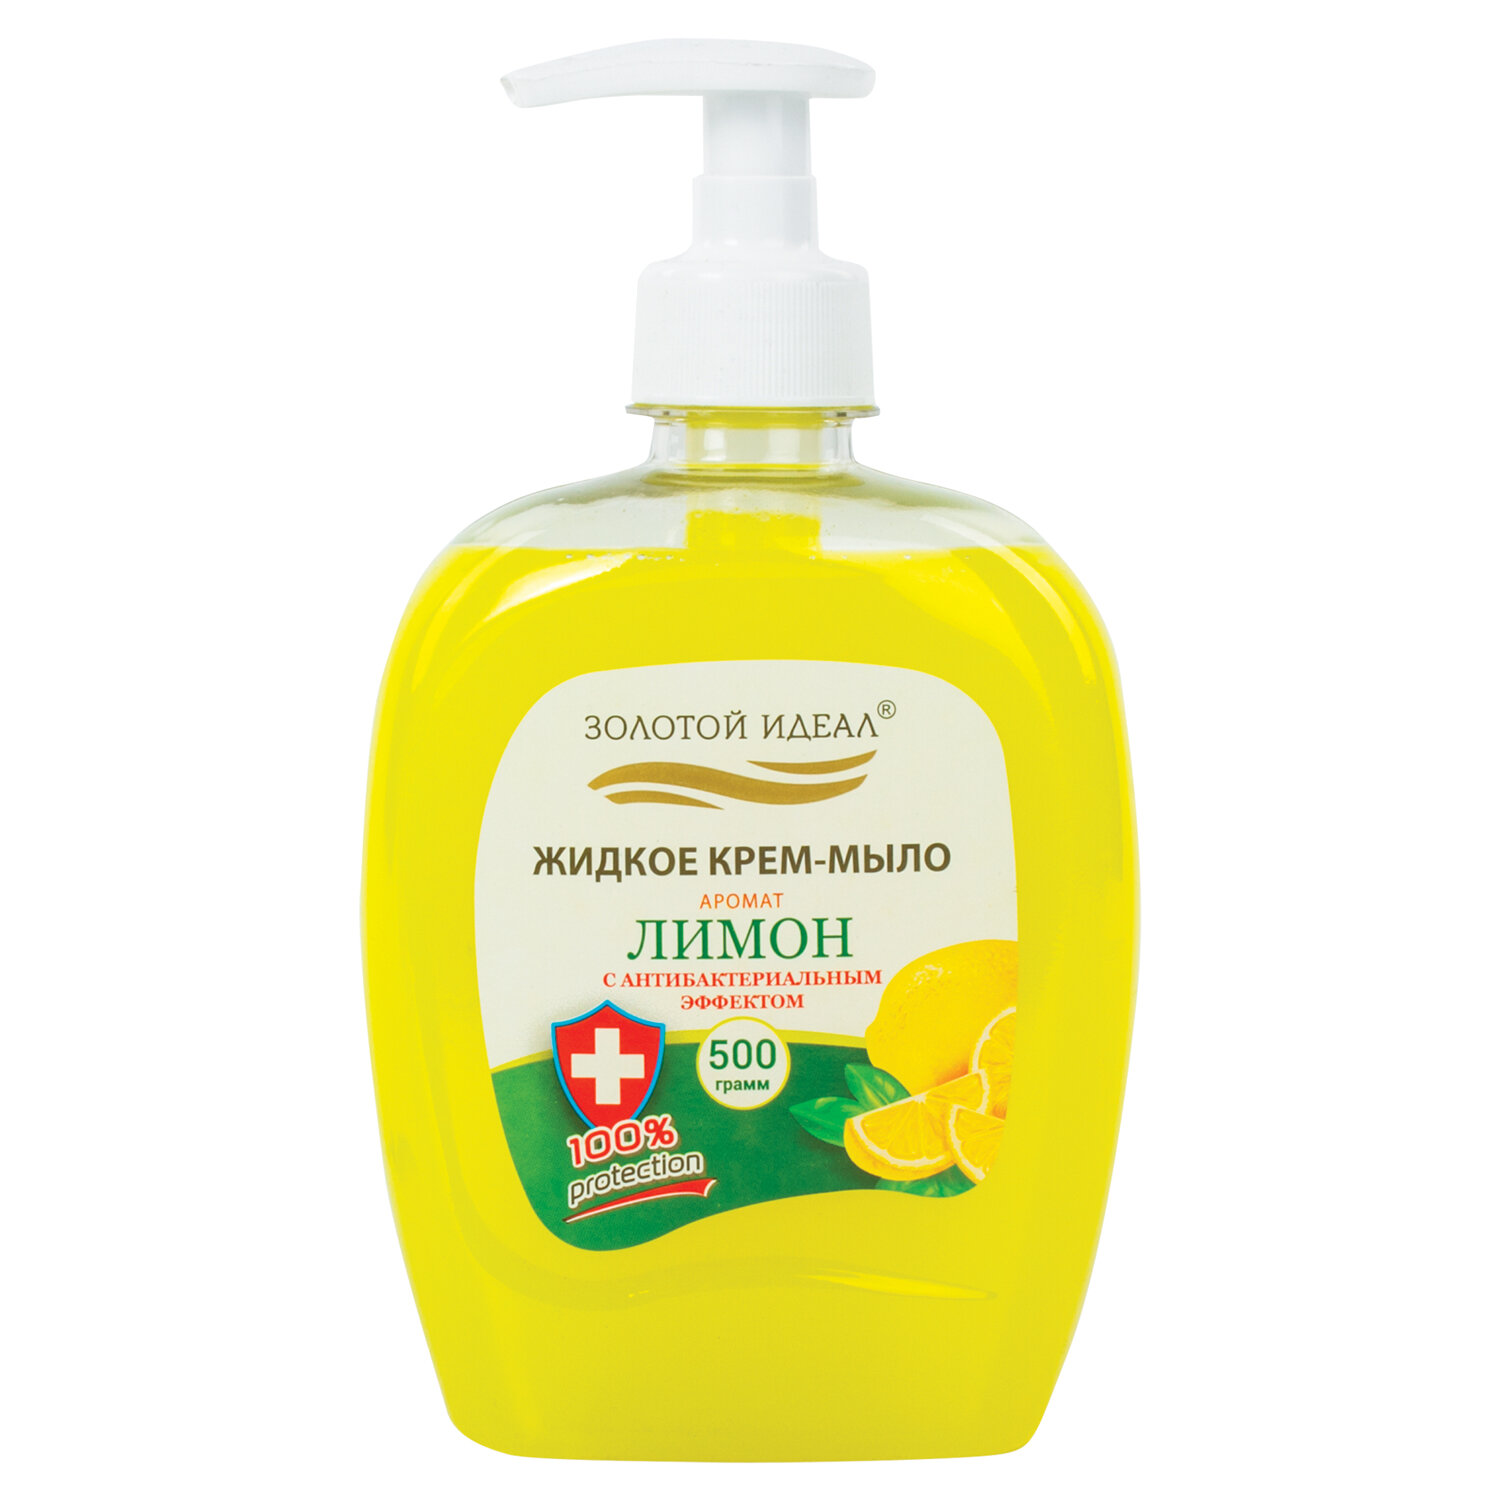 Жидкое крем-мыло Золотой идеал Лимон с антибактериальным эффектом 12 шт х 500 мл